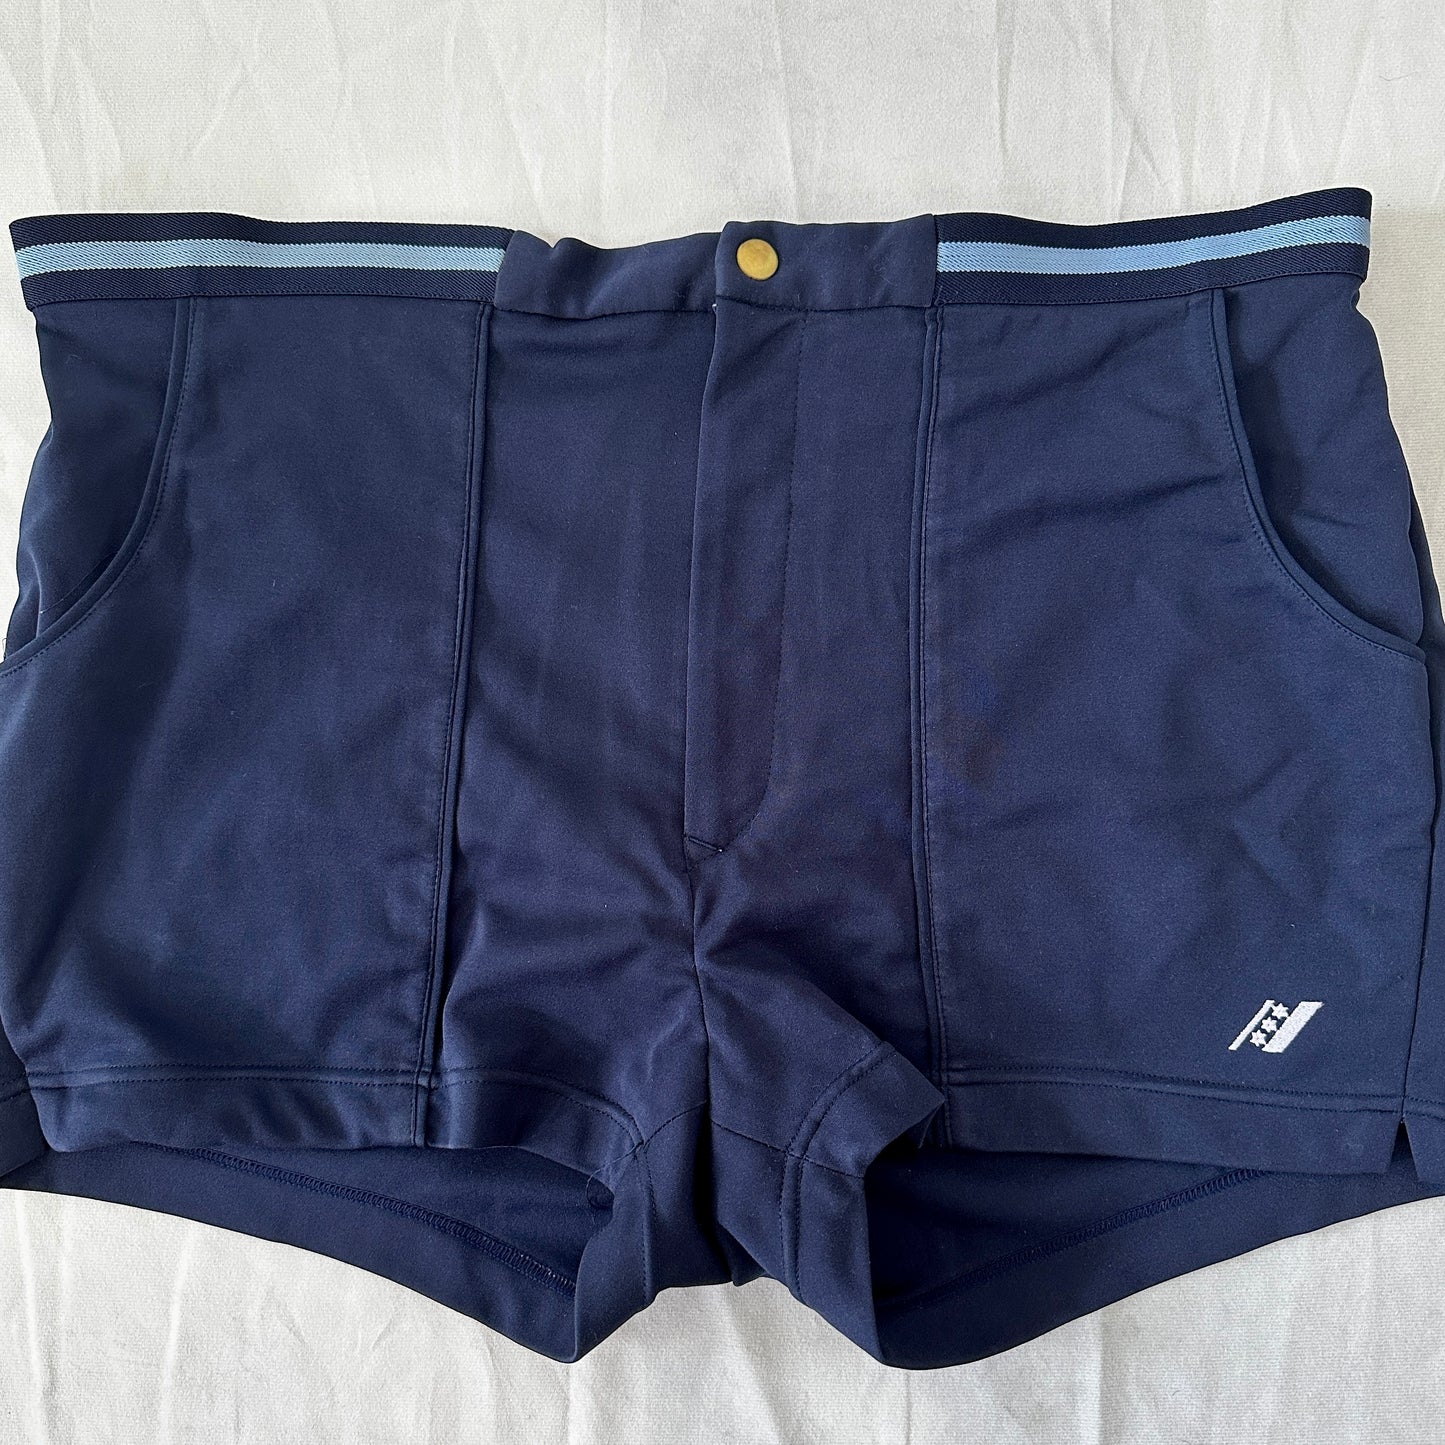 80s Vintage Tennis Shorts - Navy - XL